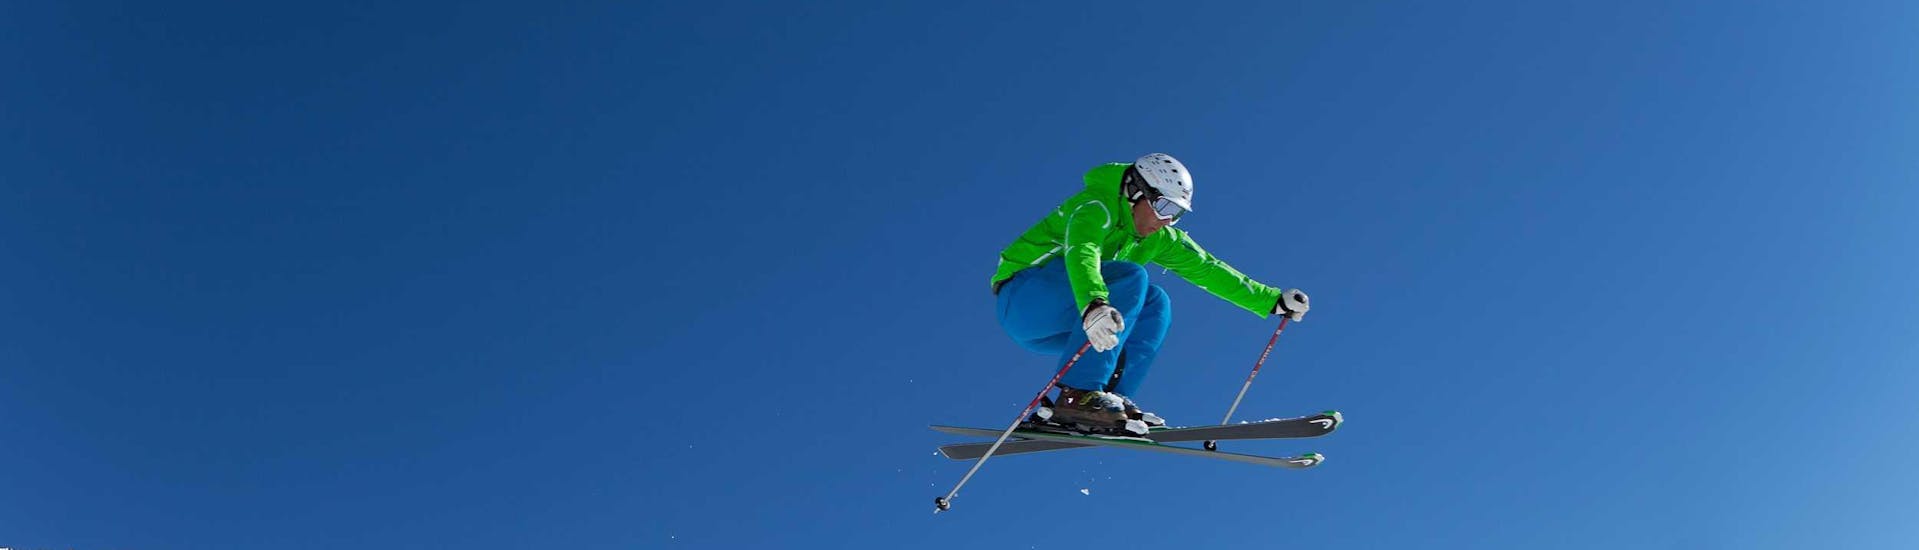 Cours particulier de ski Adultes pour Tous niveaux avec Skischule Ski Dome Oberschneider Kaprun.